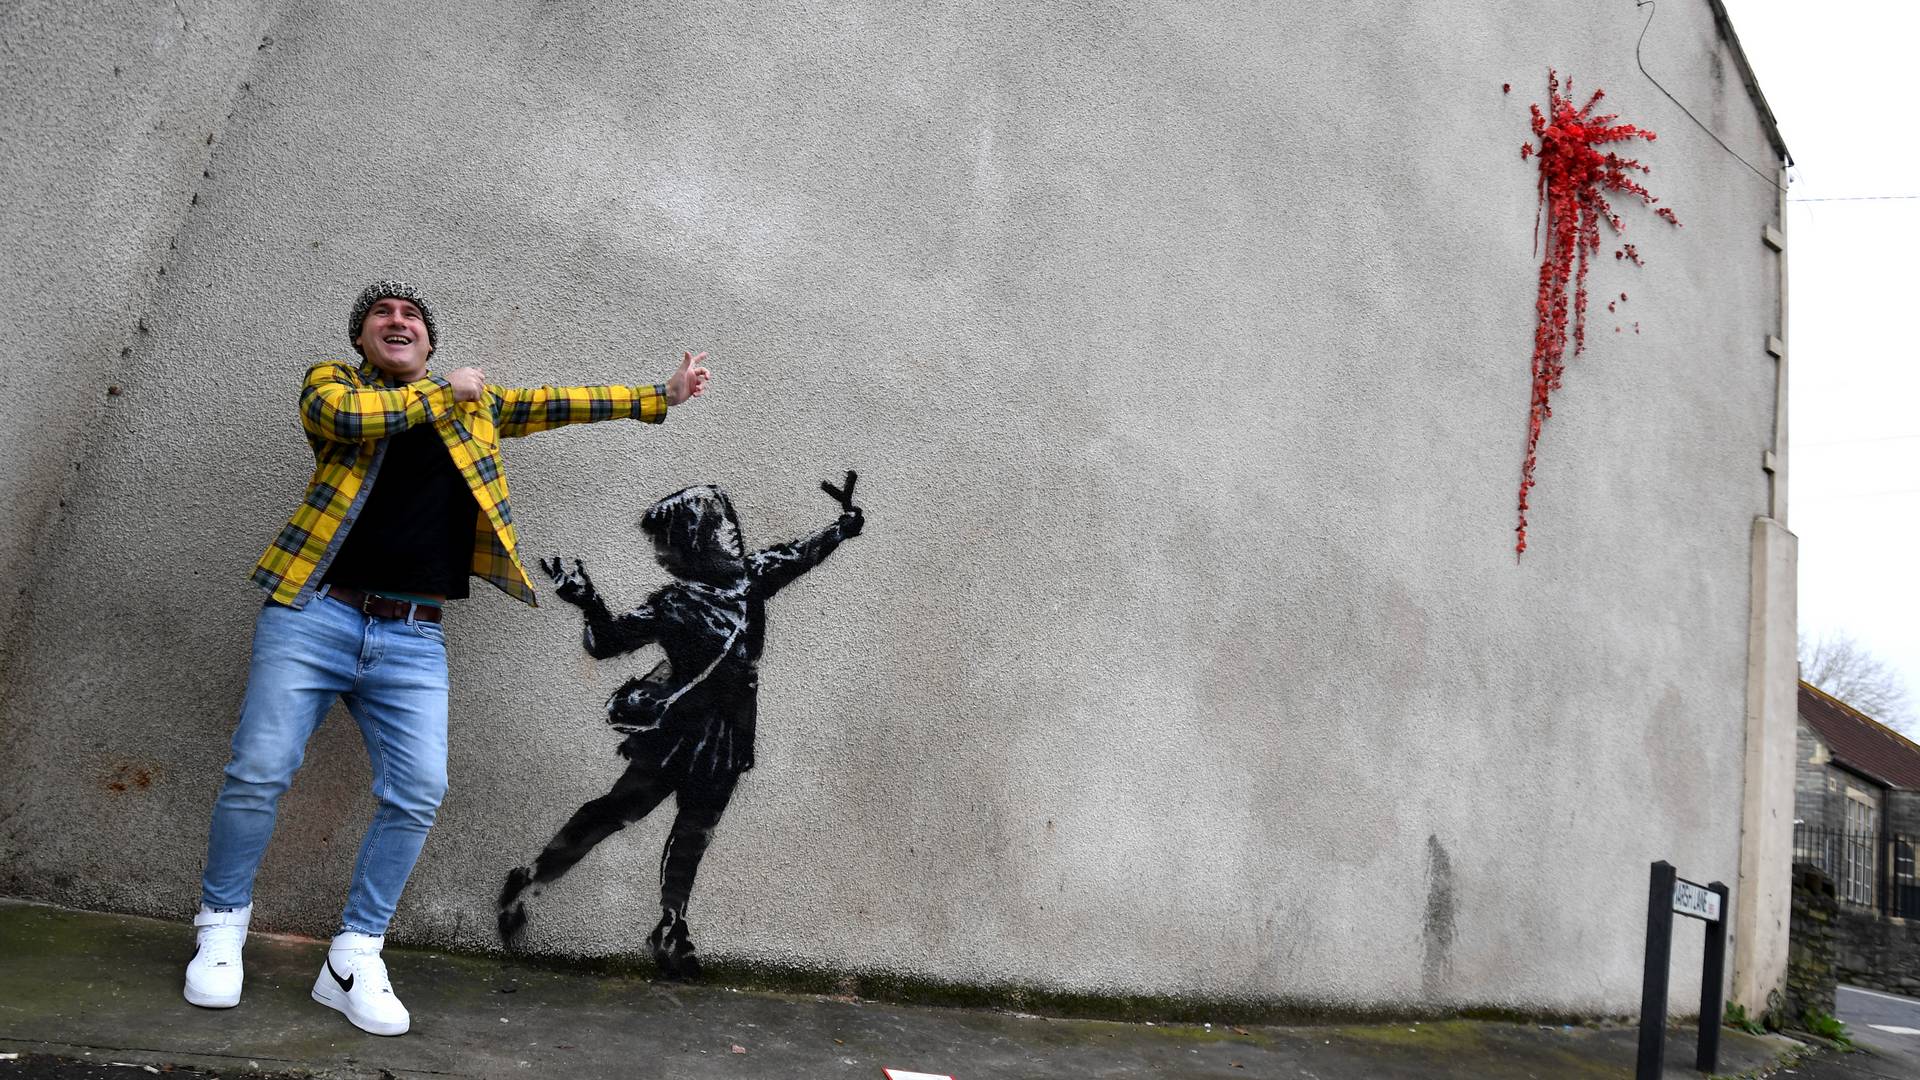 Walentynkowy mural Banksy'ego zniszczony przez wandali. Wytrzymał niecałe 48 godzin